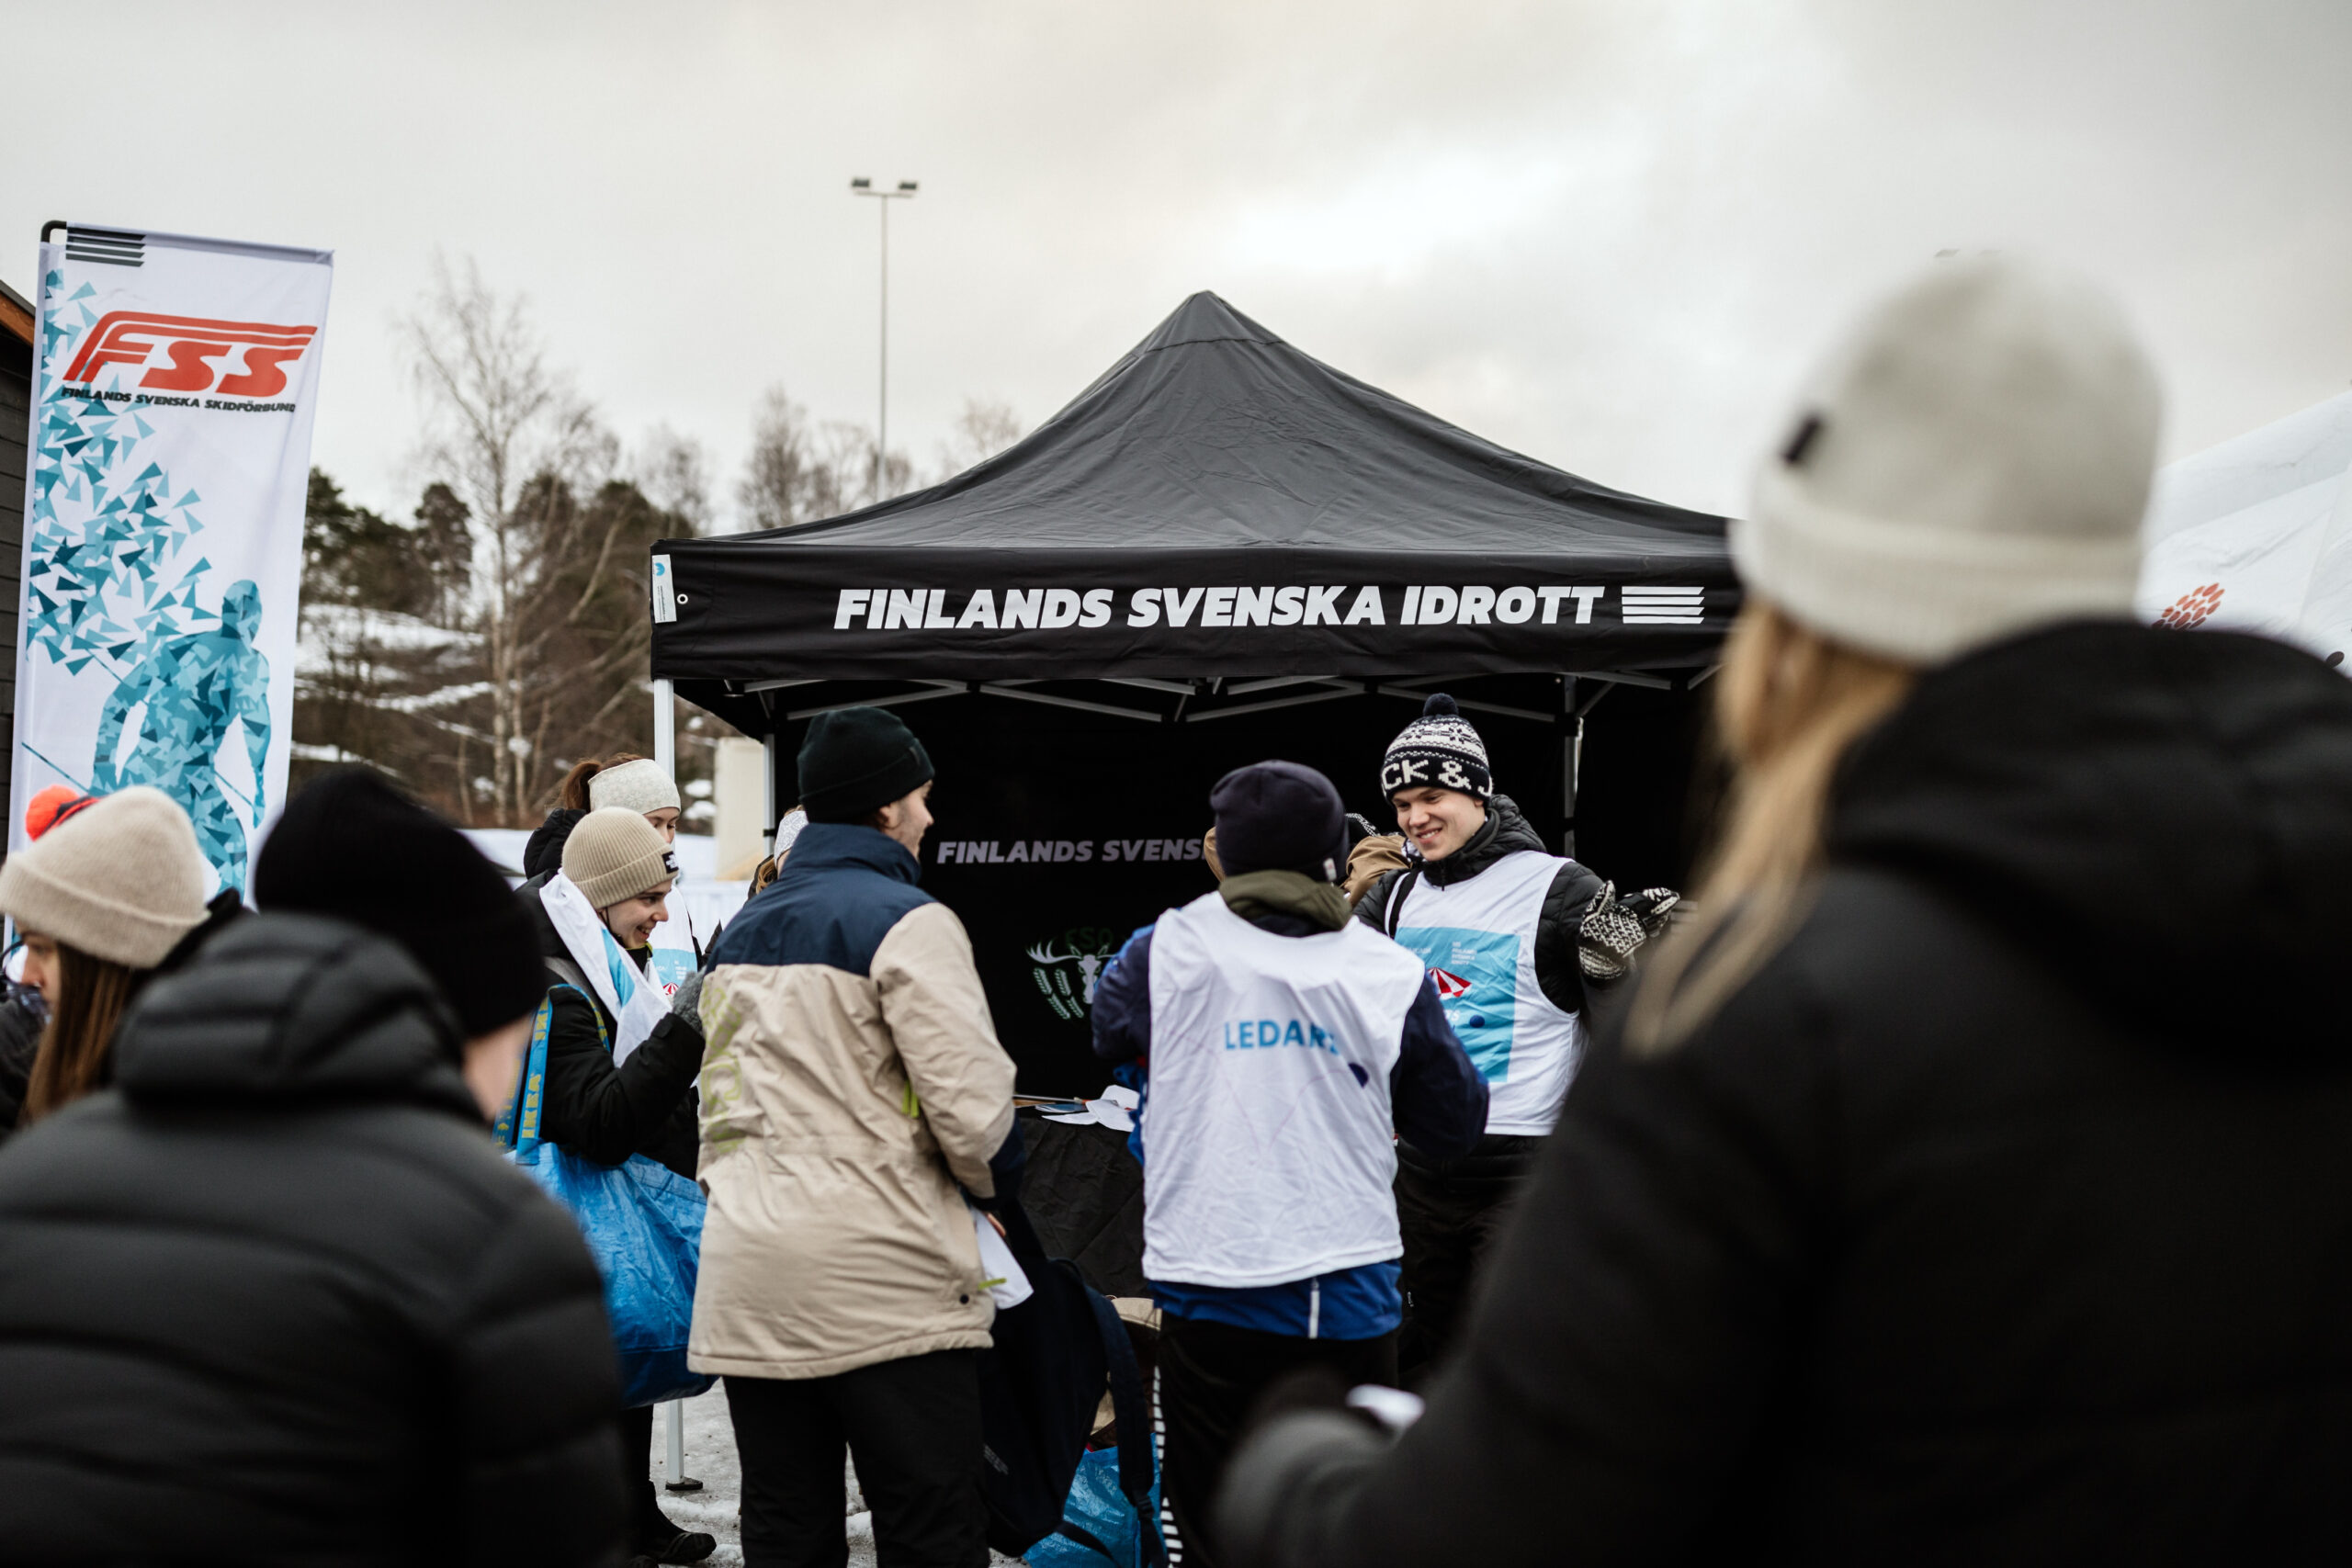 Människor står samlade ute och hälsar glatt på varandra. I bakgrunden kan man se en FSS flagga och ett tält med texten Finlands Svenska Idrott.